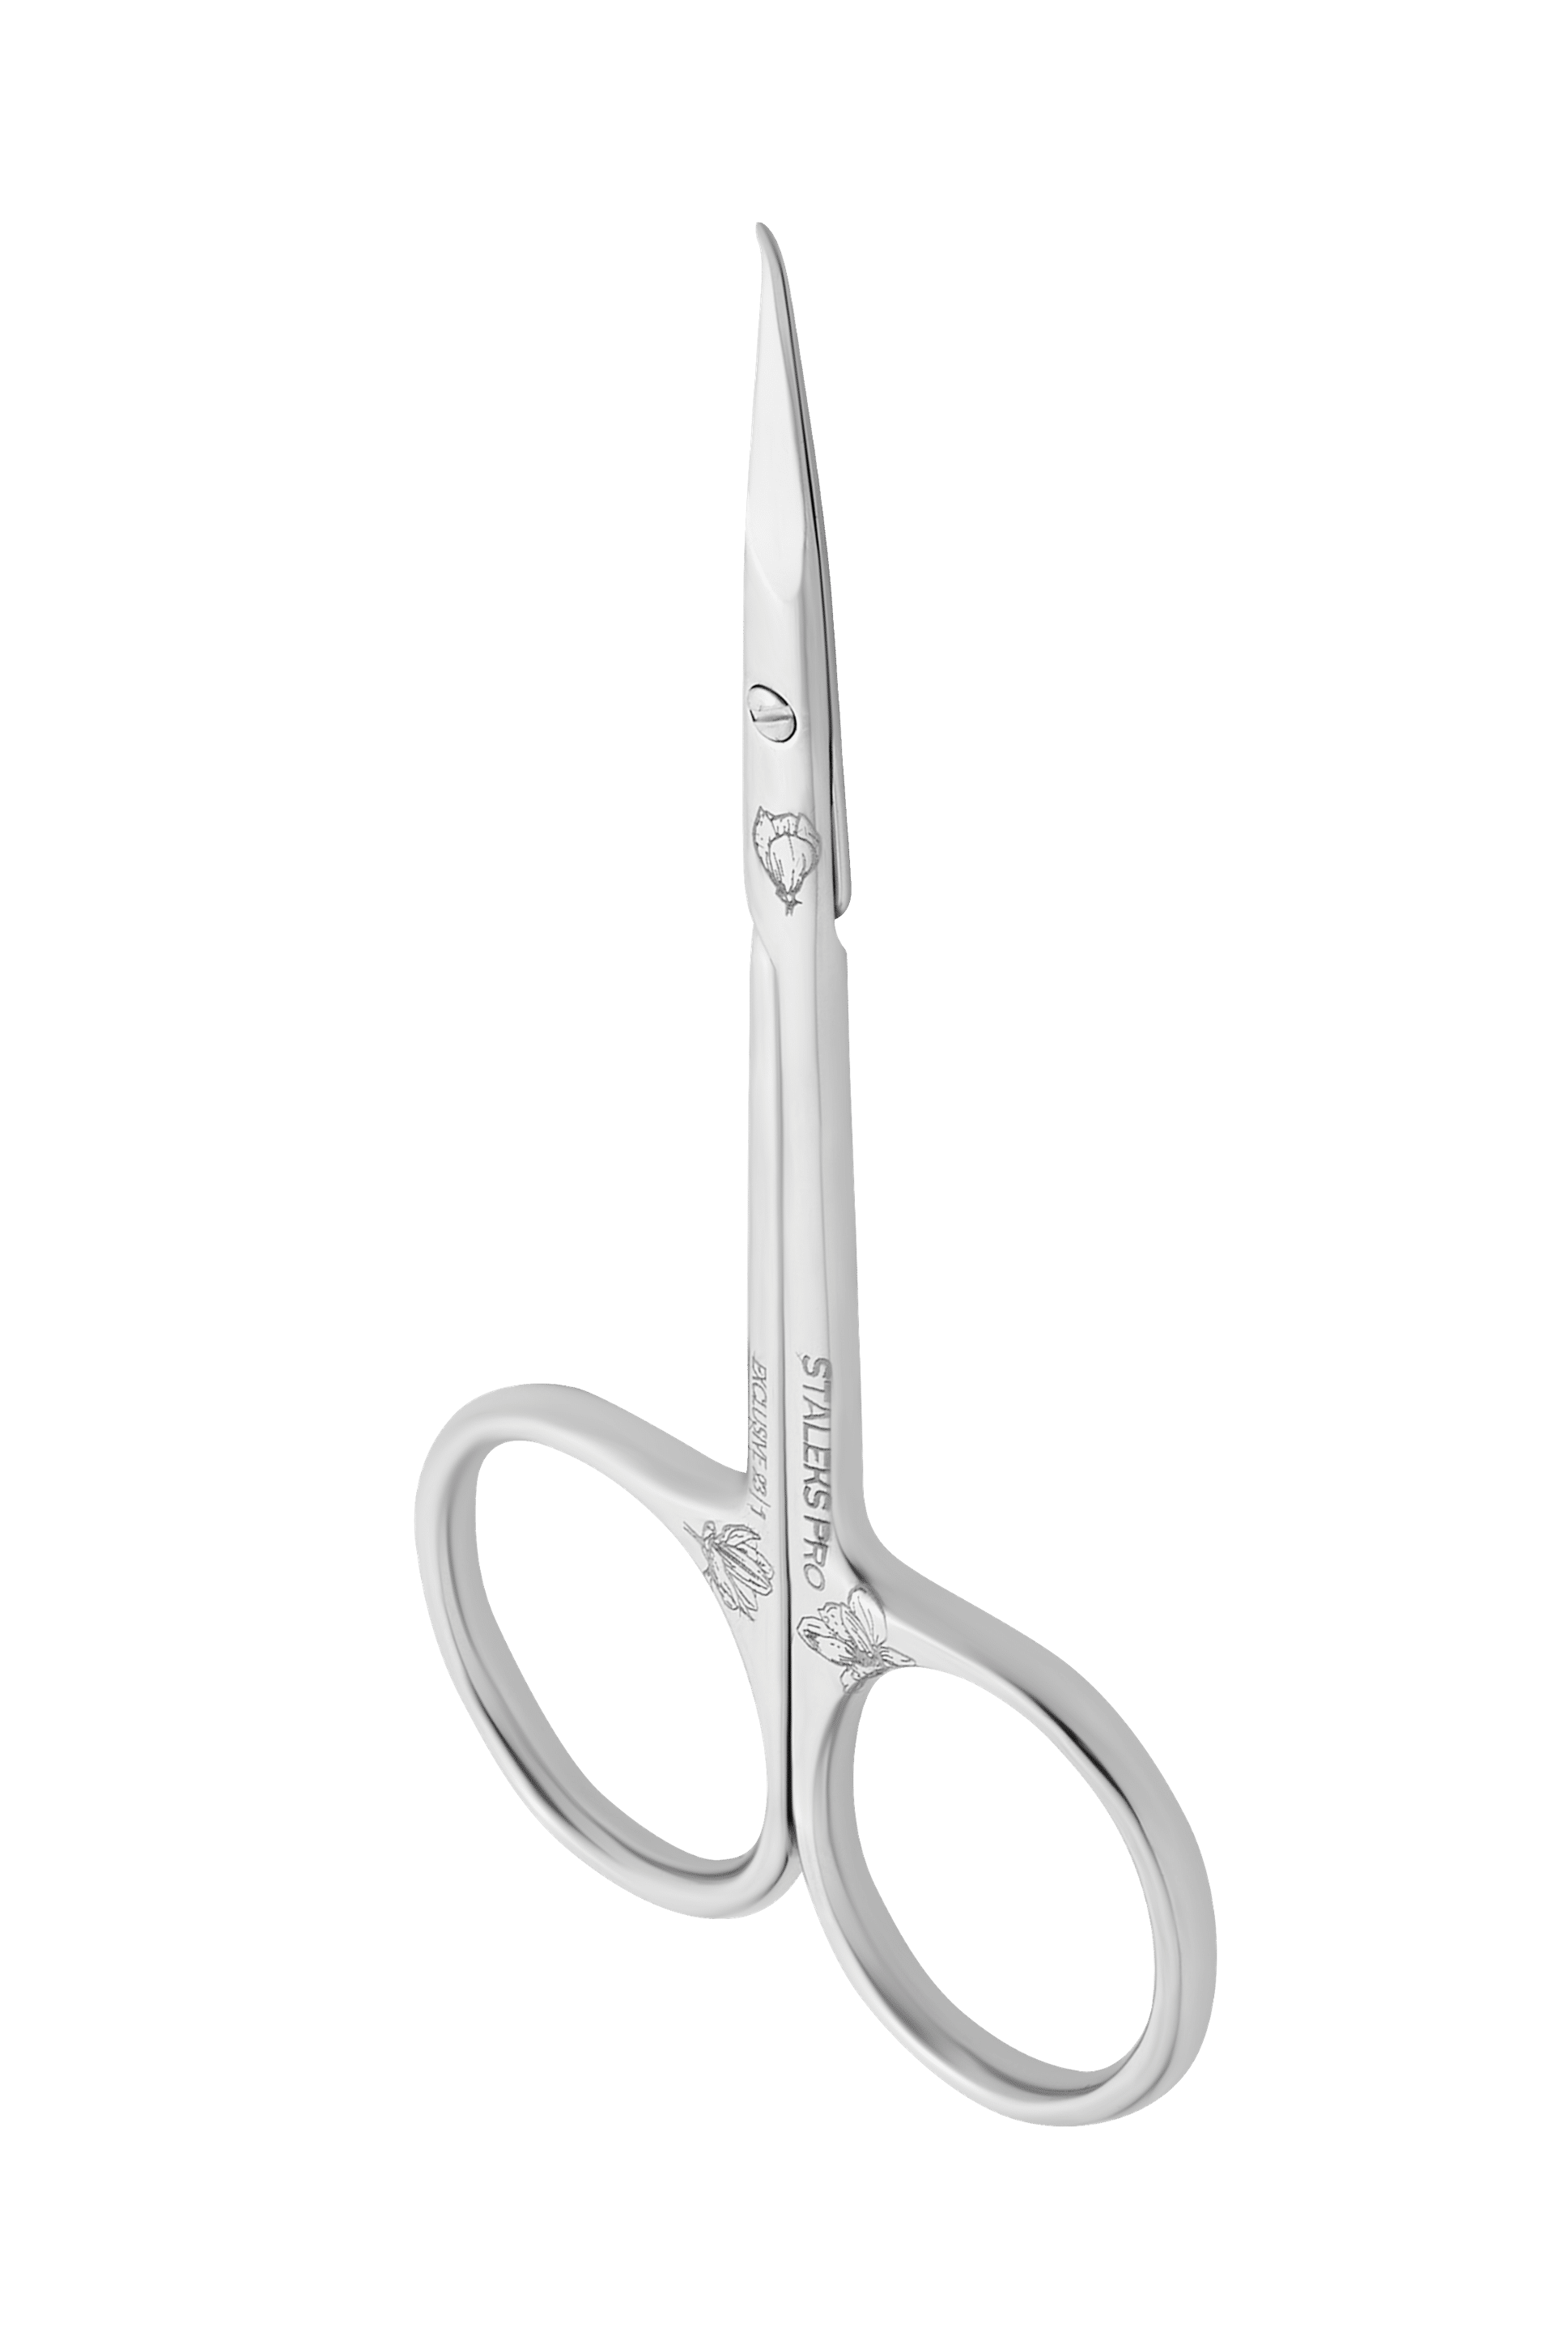 Professional scissors SX-23/1 magnolia 